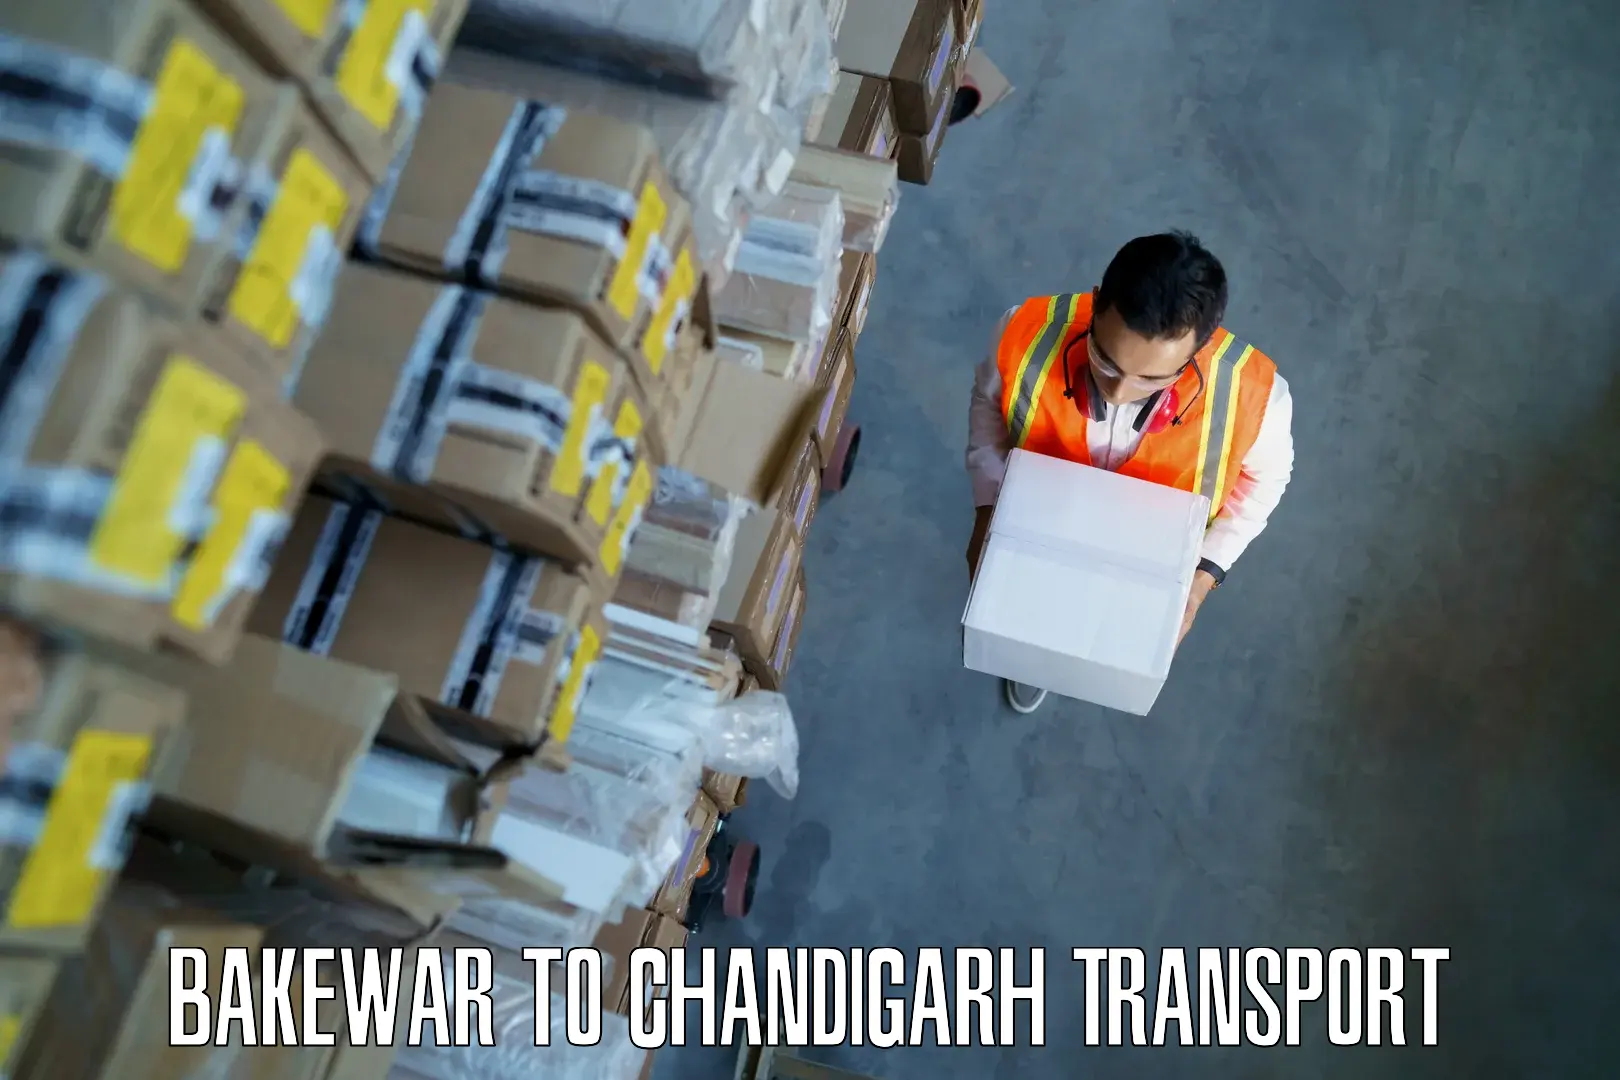 Road transport online services Bakewar to Chandigarh